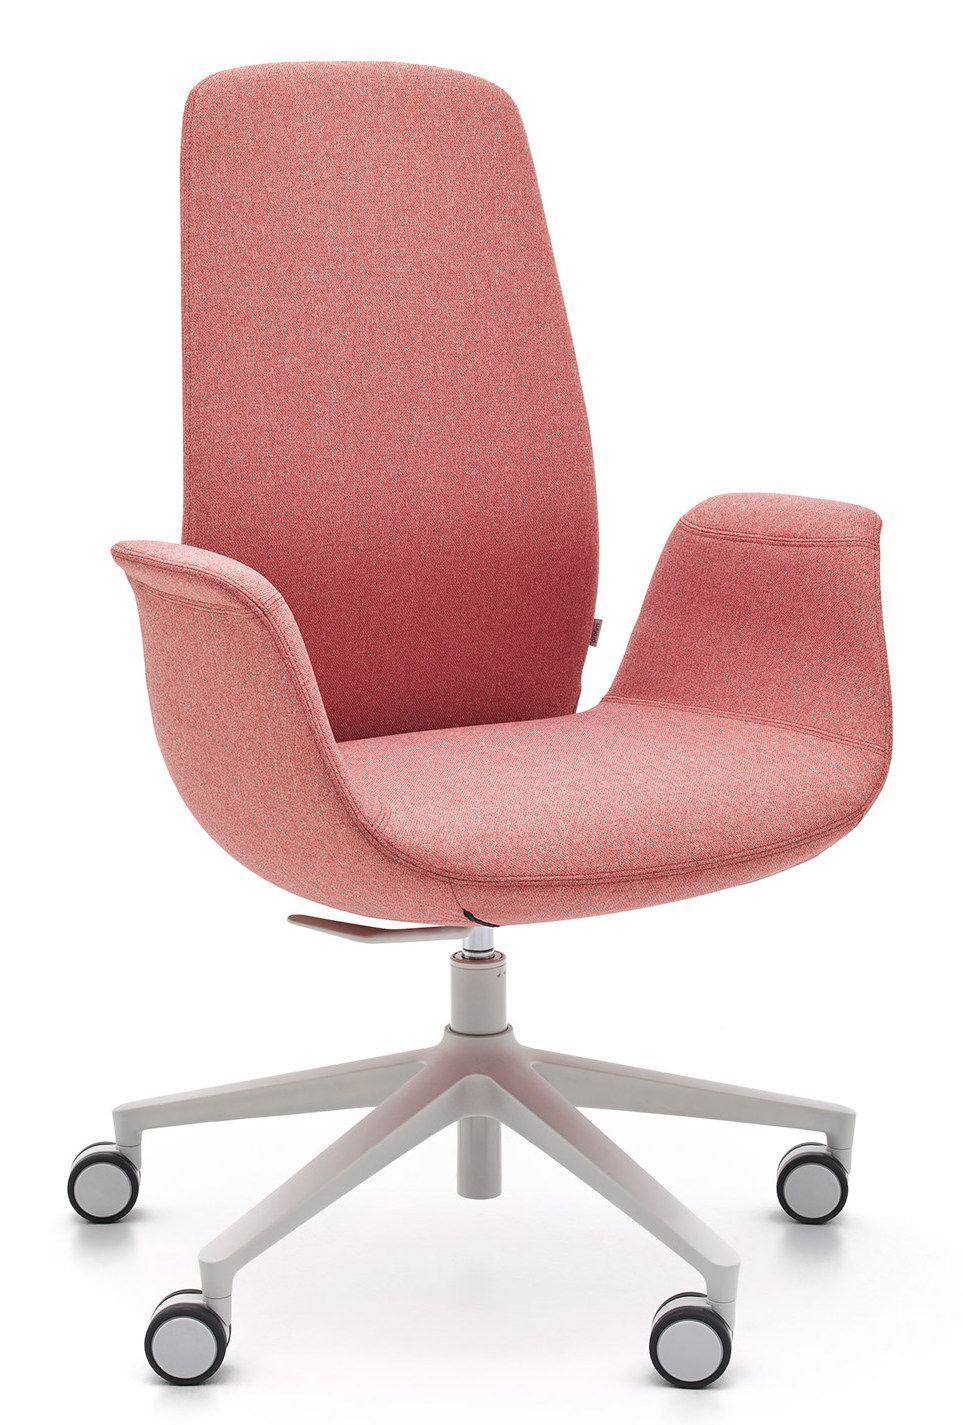 Fotel obrotowy ELLIE PRO 10ST fabryki Profim to wysokiej jakości fotel biurowy, który został zaprojektowany z myślą o ergonomii i wygodzie użytkownika. Fotel posiada mechanizm synchroniczny samoważący  typu SELF, z mozliwością blokady w dwóch pozycjach co zapewnia komfort podczas długiego siedzenia przed biurkiem.